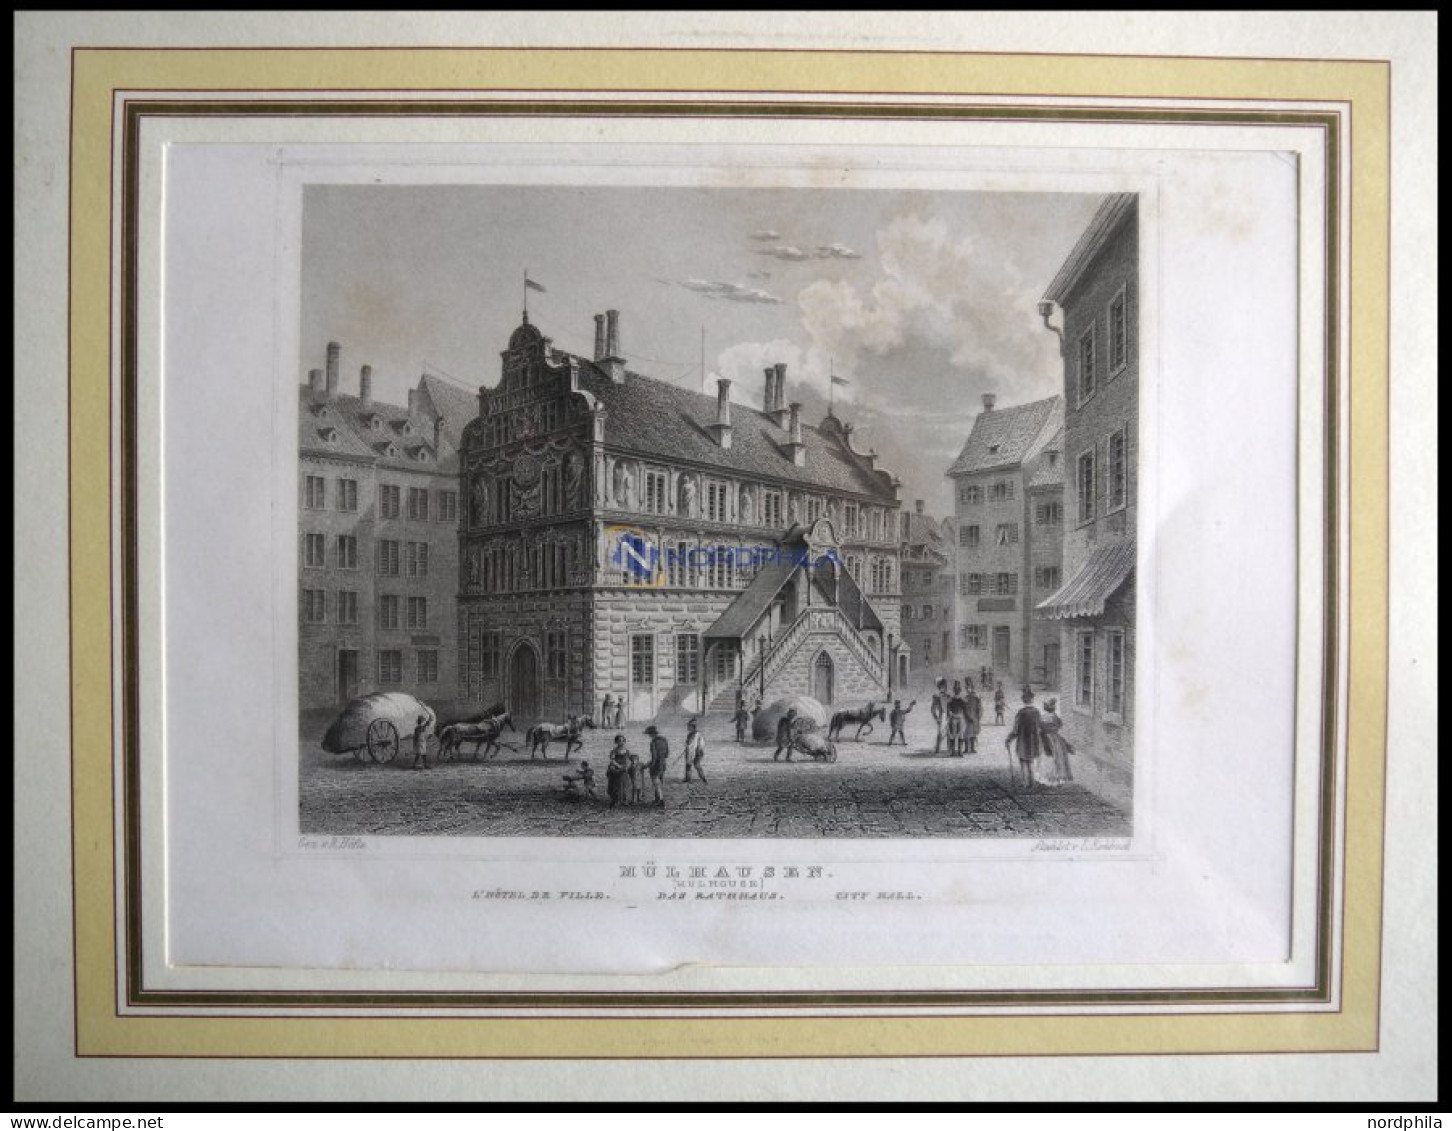 MÜHLHAUSEN: Das Rathaus, Stahlstich Von Höfle/Rohbock Um 1840 - Prints & Engravings